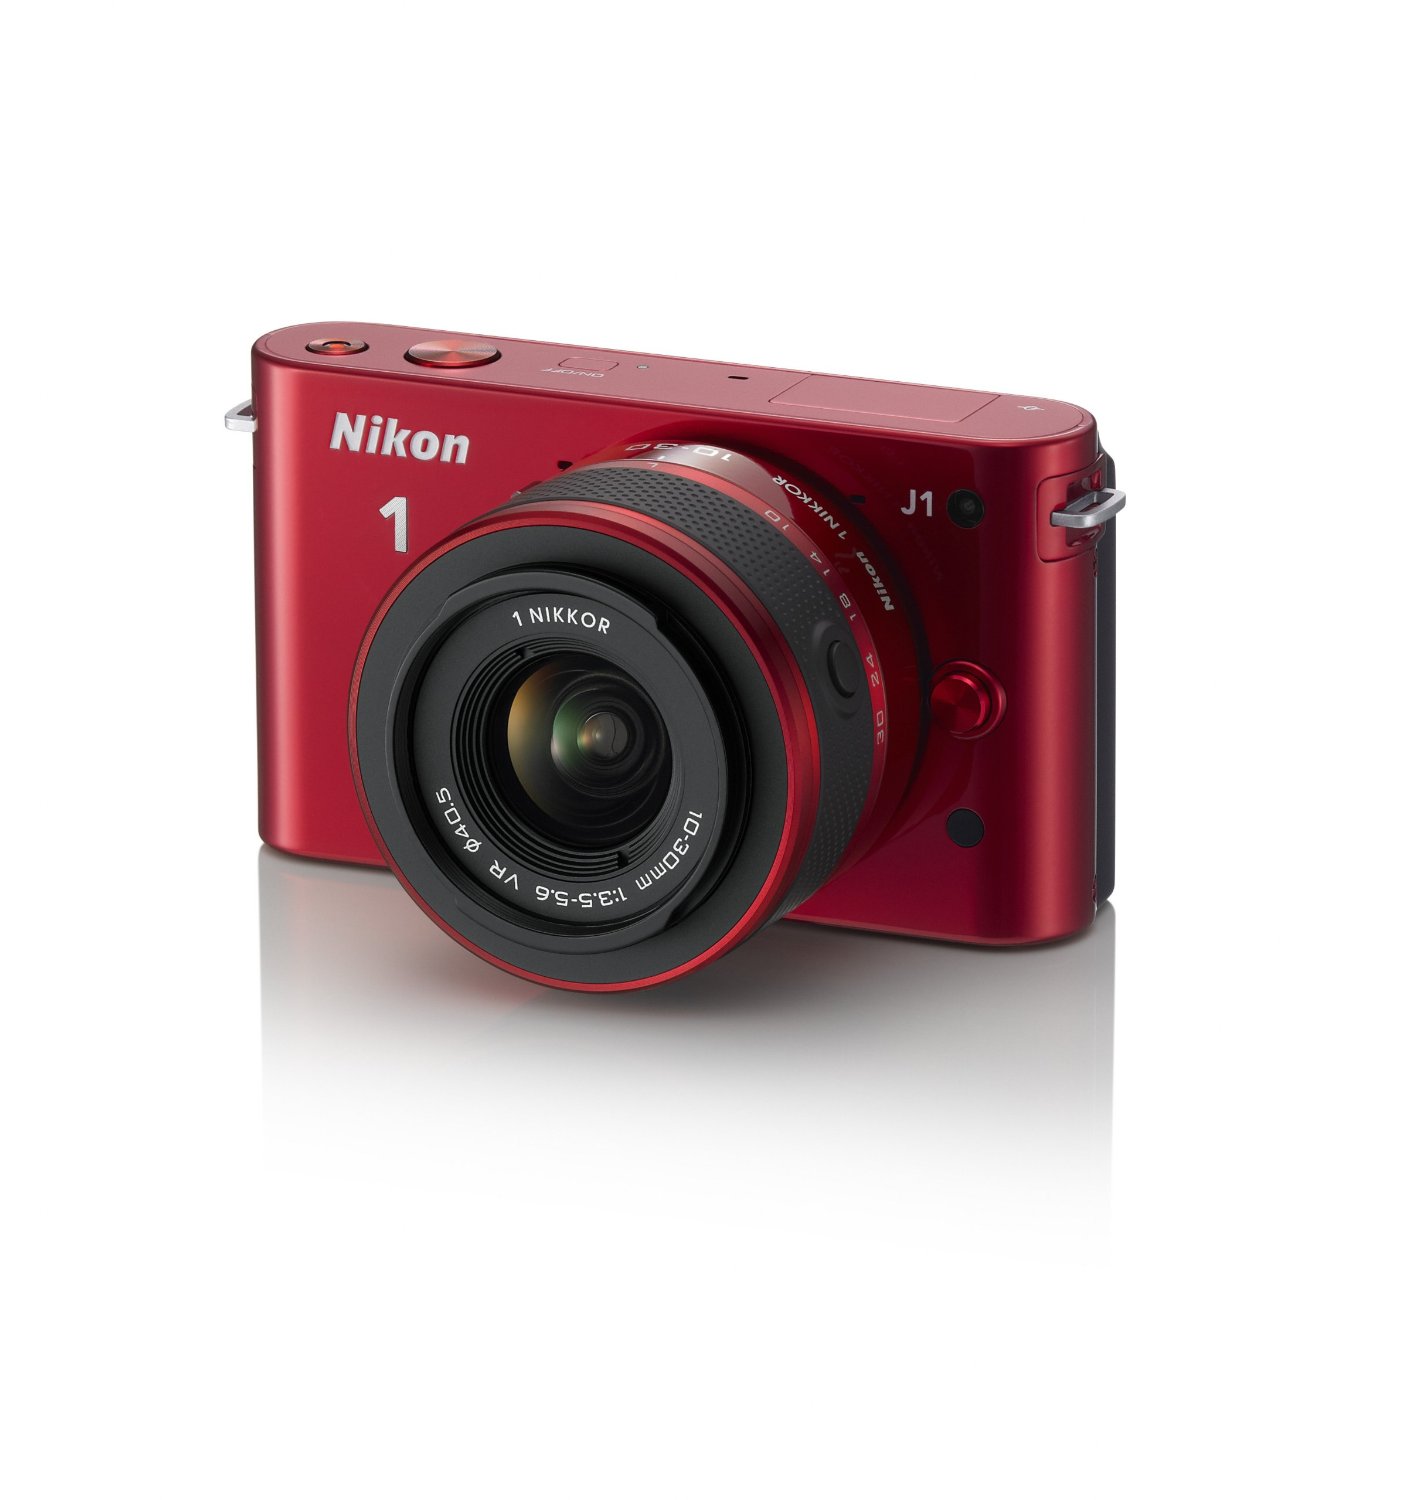 尼康 Nikon 1 J1 10.1 MP 高清微单数码相机带10-30mm VR 1 NIKKOR镜头套装  $396.95